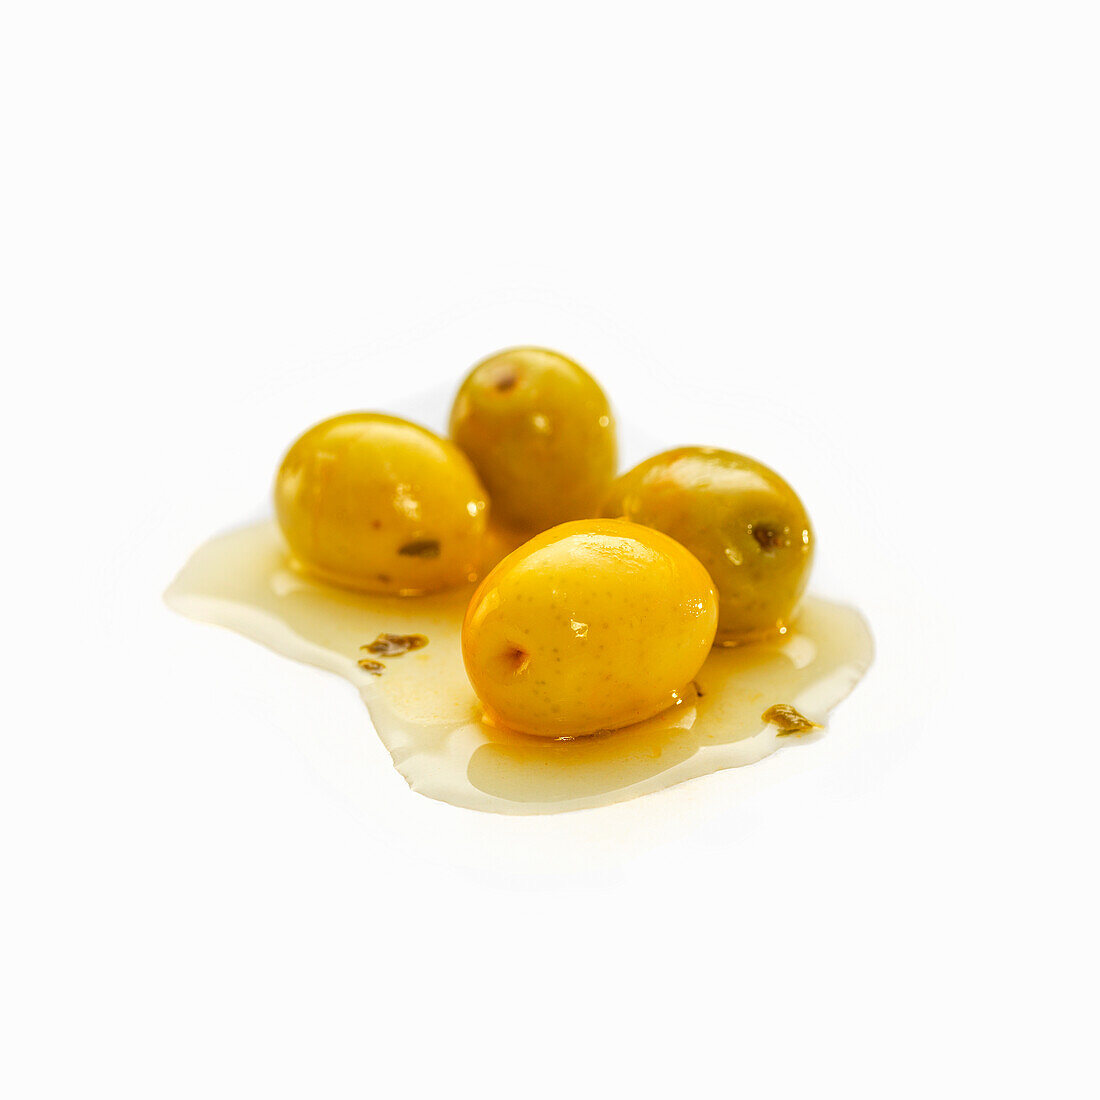 Eingelegte spanische Oliven